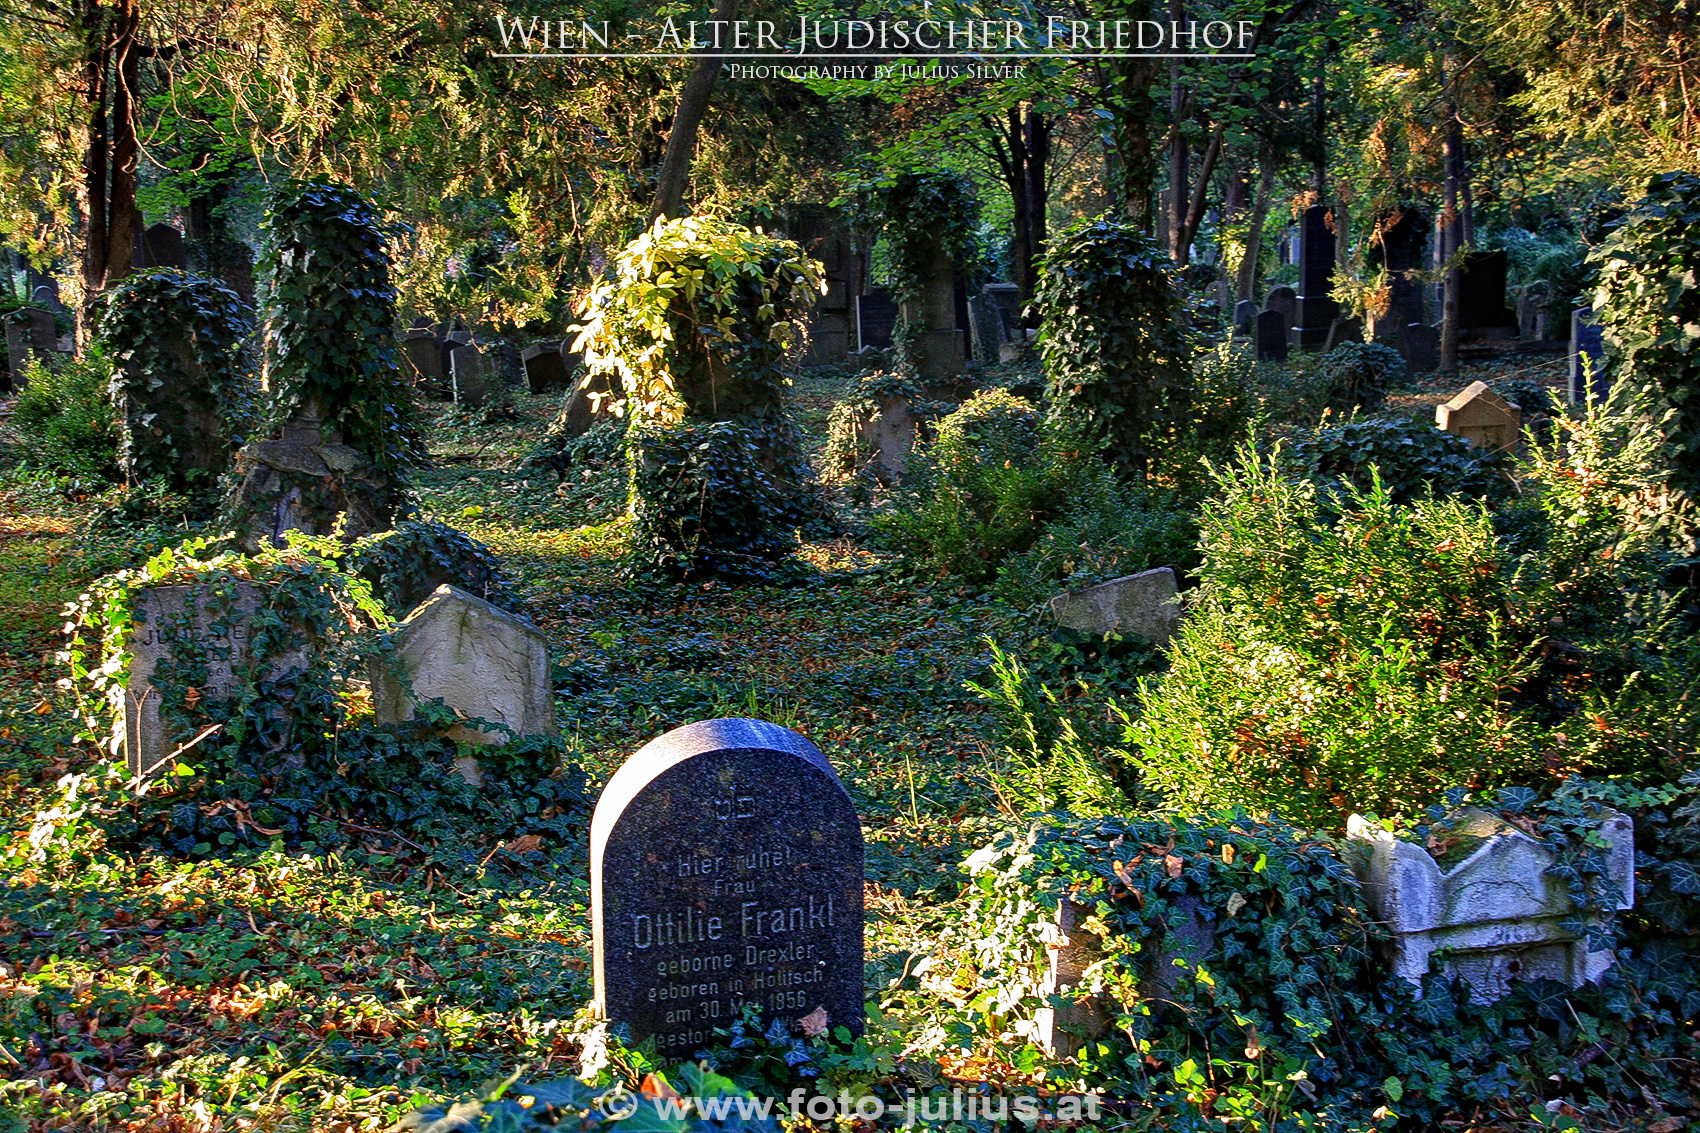 W5218a_Wien_Alter_juedischer_Friedhof.jpg, 1,7MB